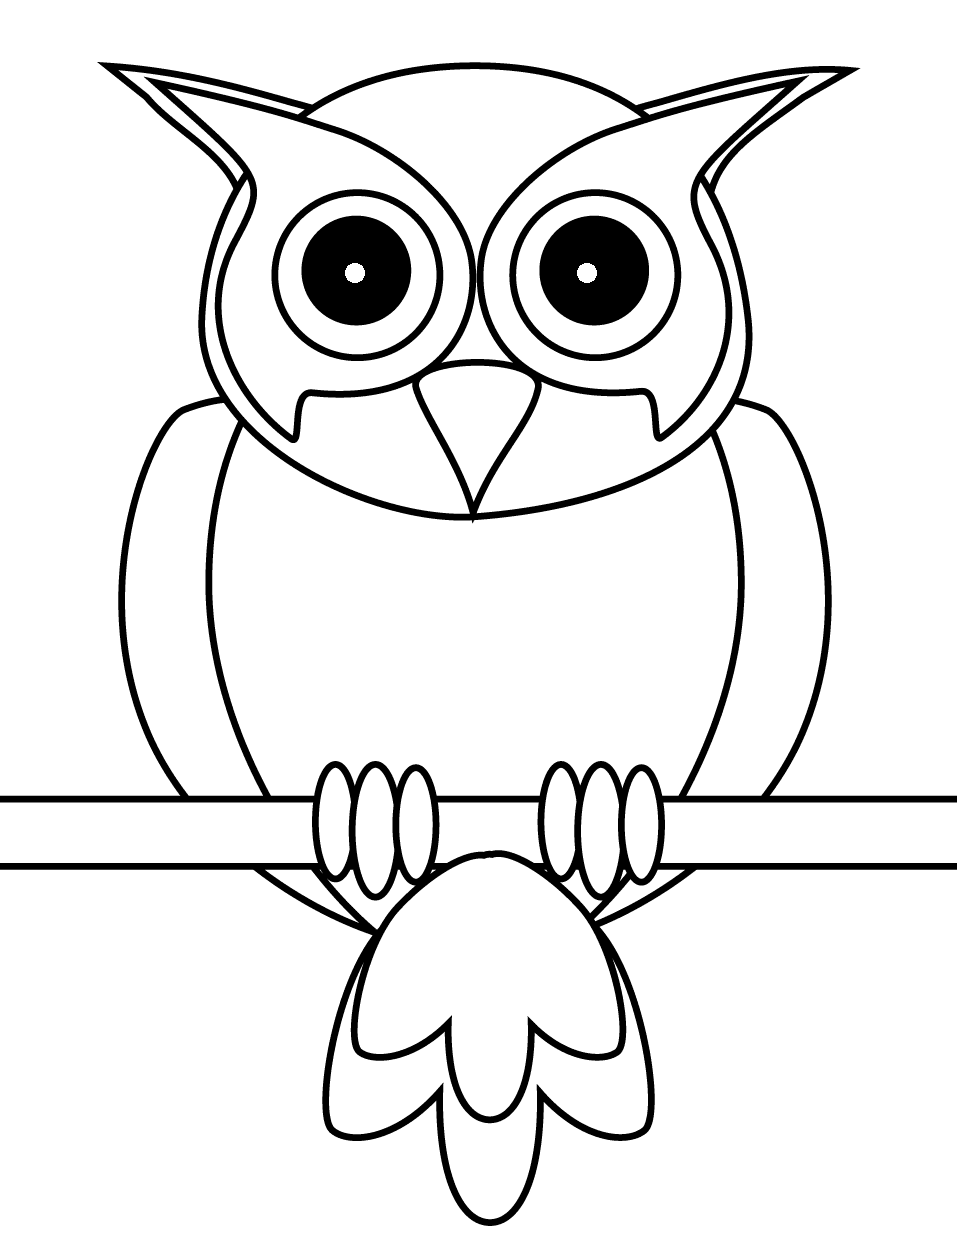 Бесплатная распечатка совы от Owl